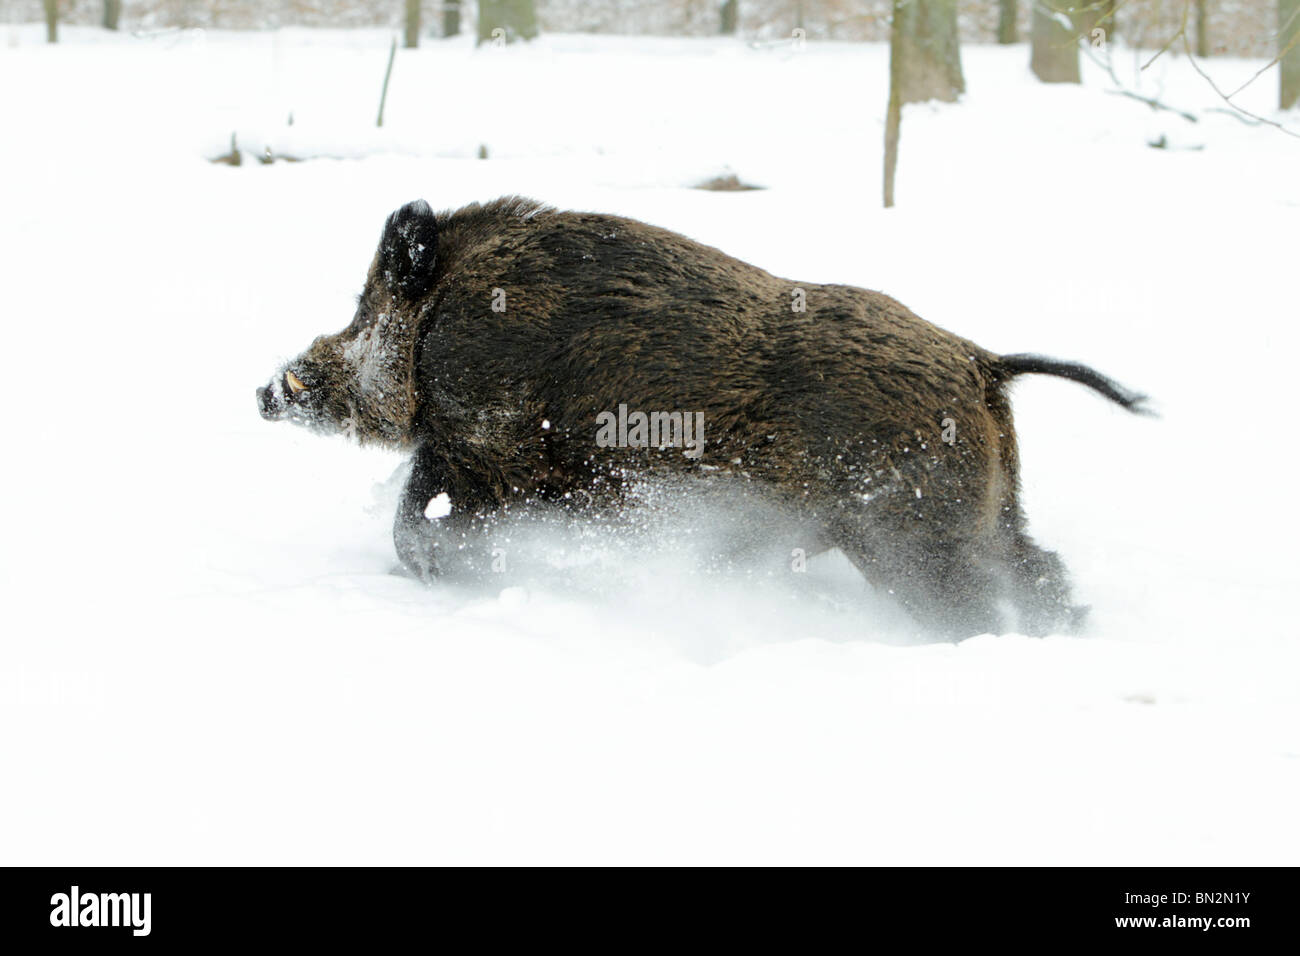 Cochon sauvage européenne, (Sus scrofa) mâle d'un animal ou d'un sanglier, courant à travers la forêt couverte de neige, Allemagne Banque D'Images